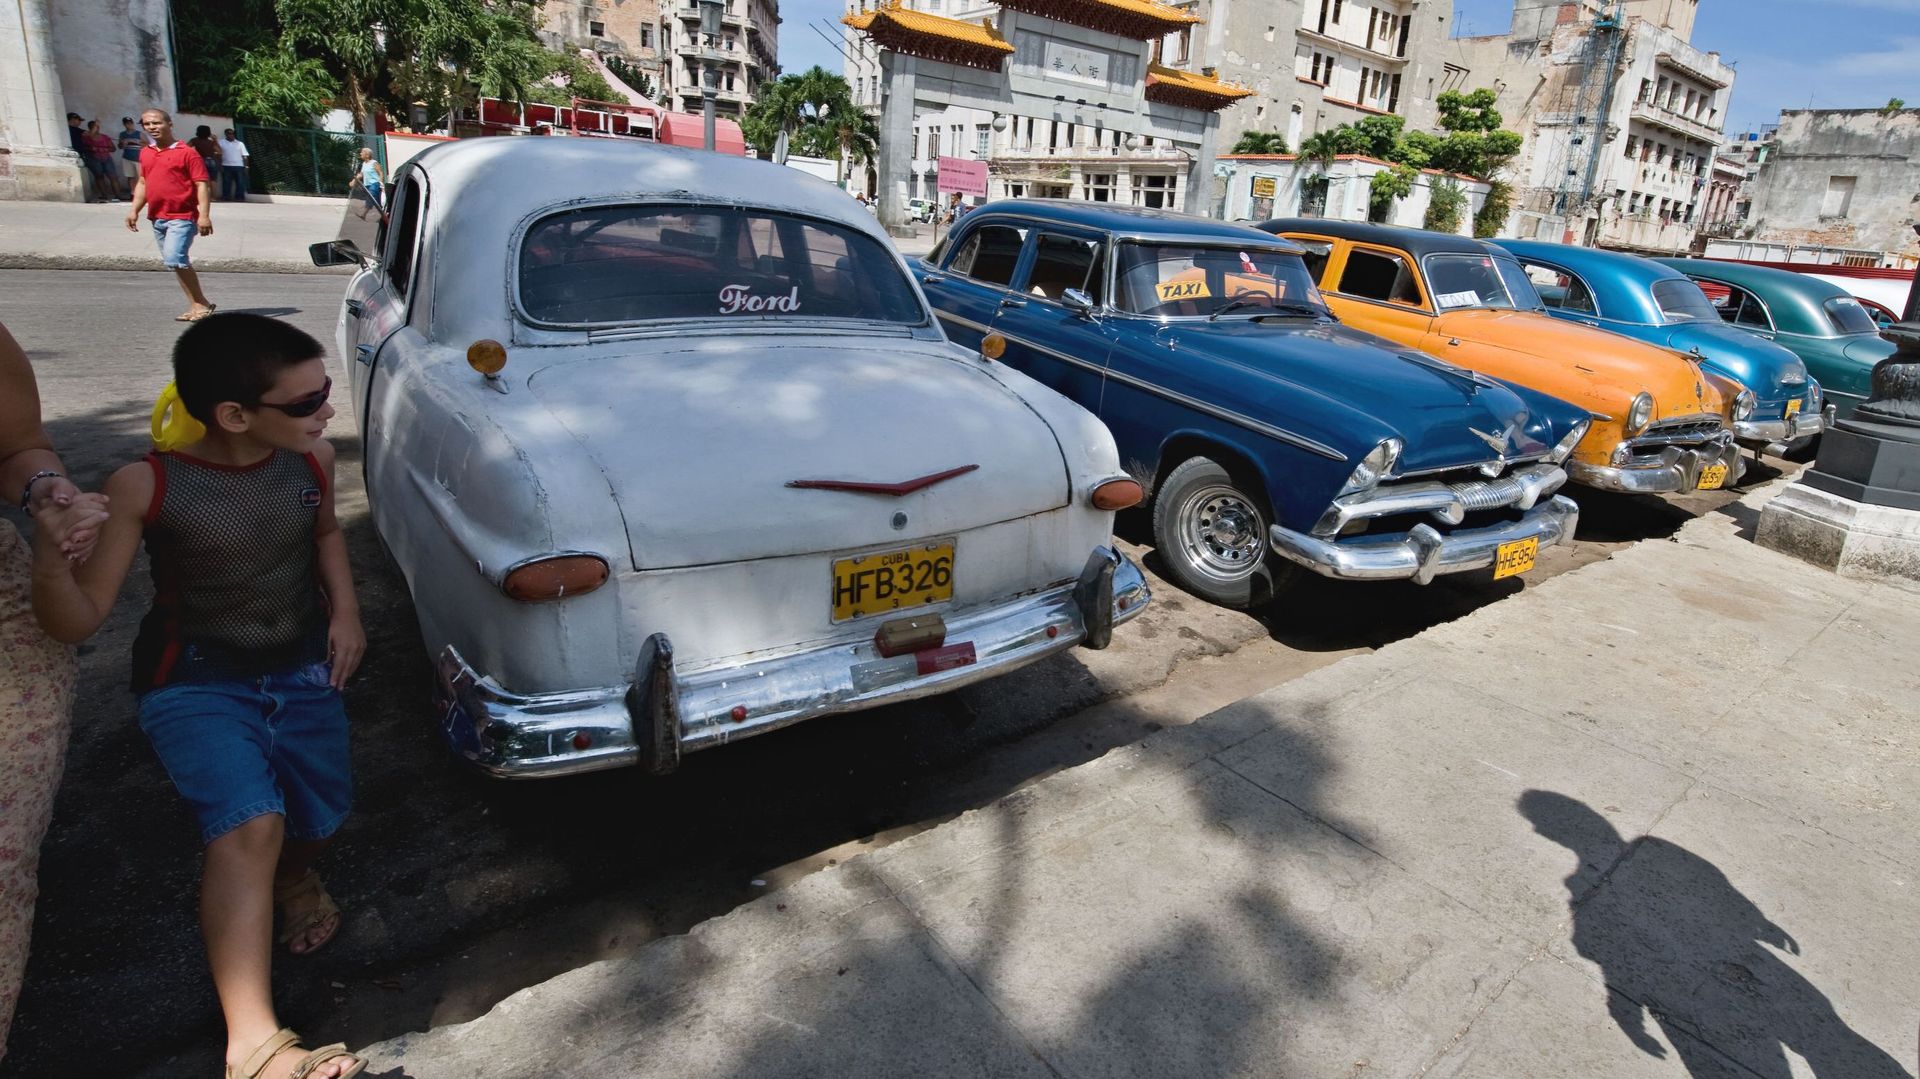 L'embargo américain contre Cuba condamné l'assemblée générale de l'ONU